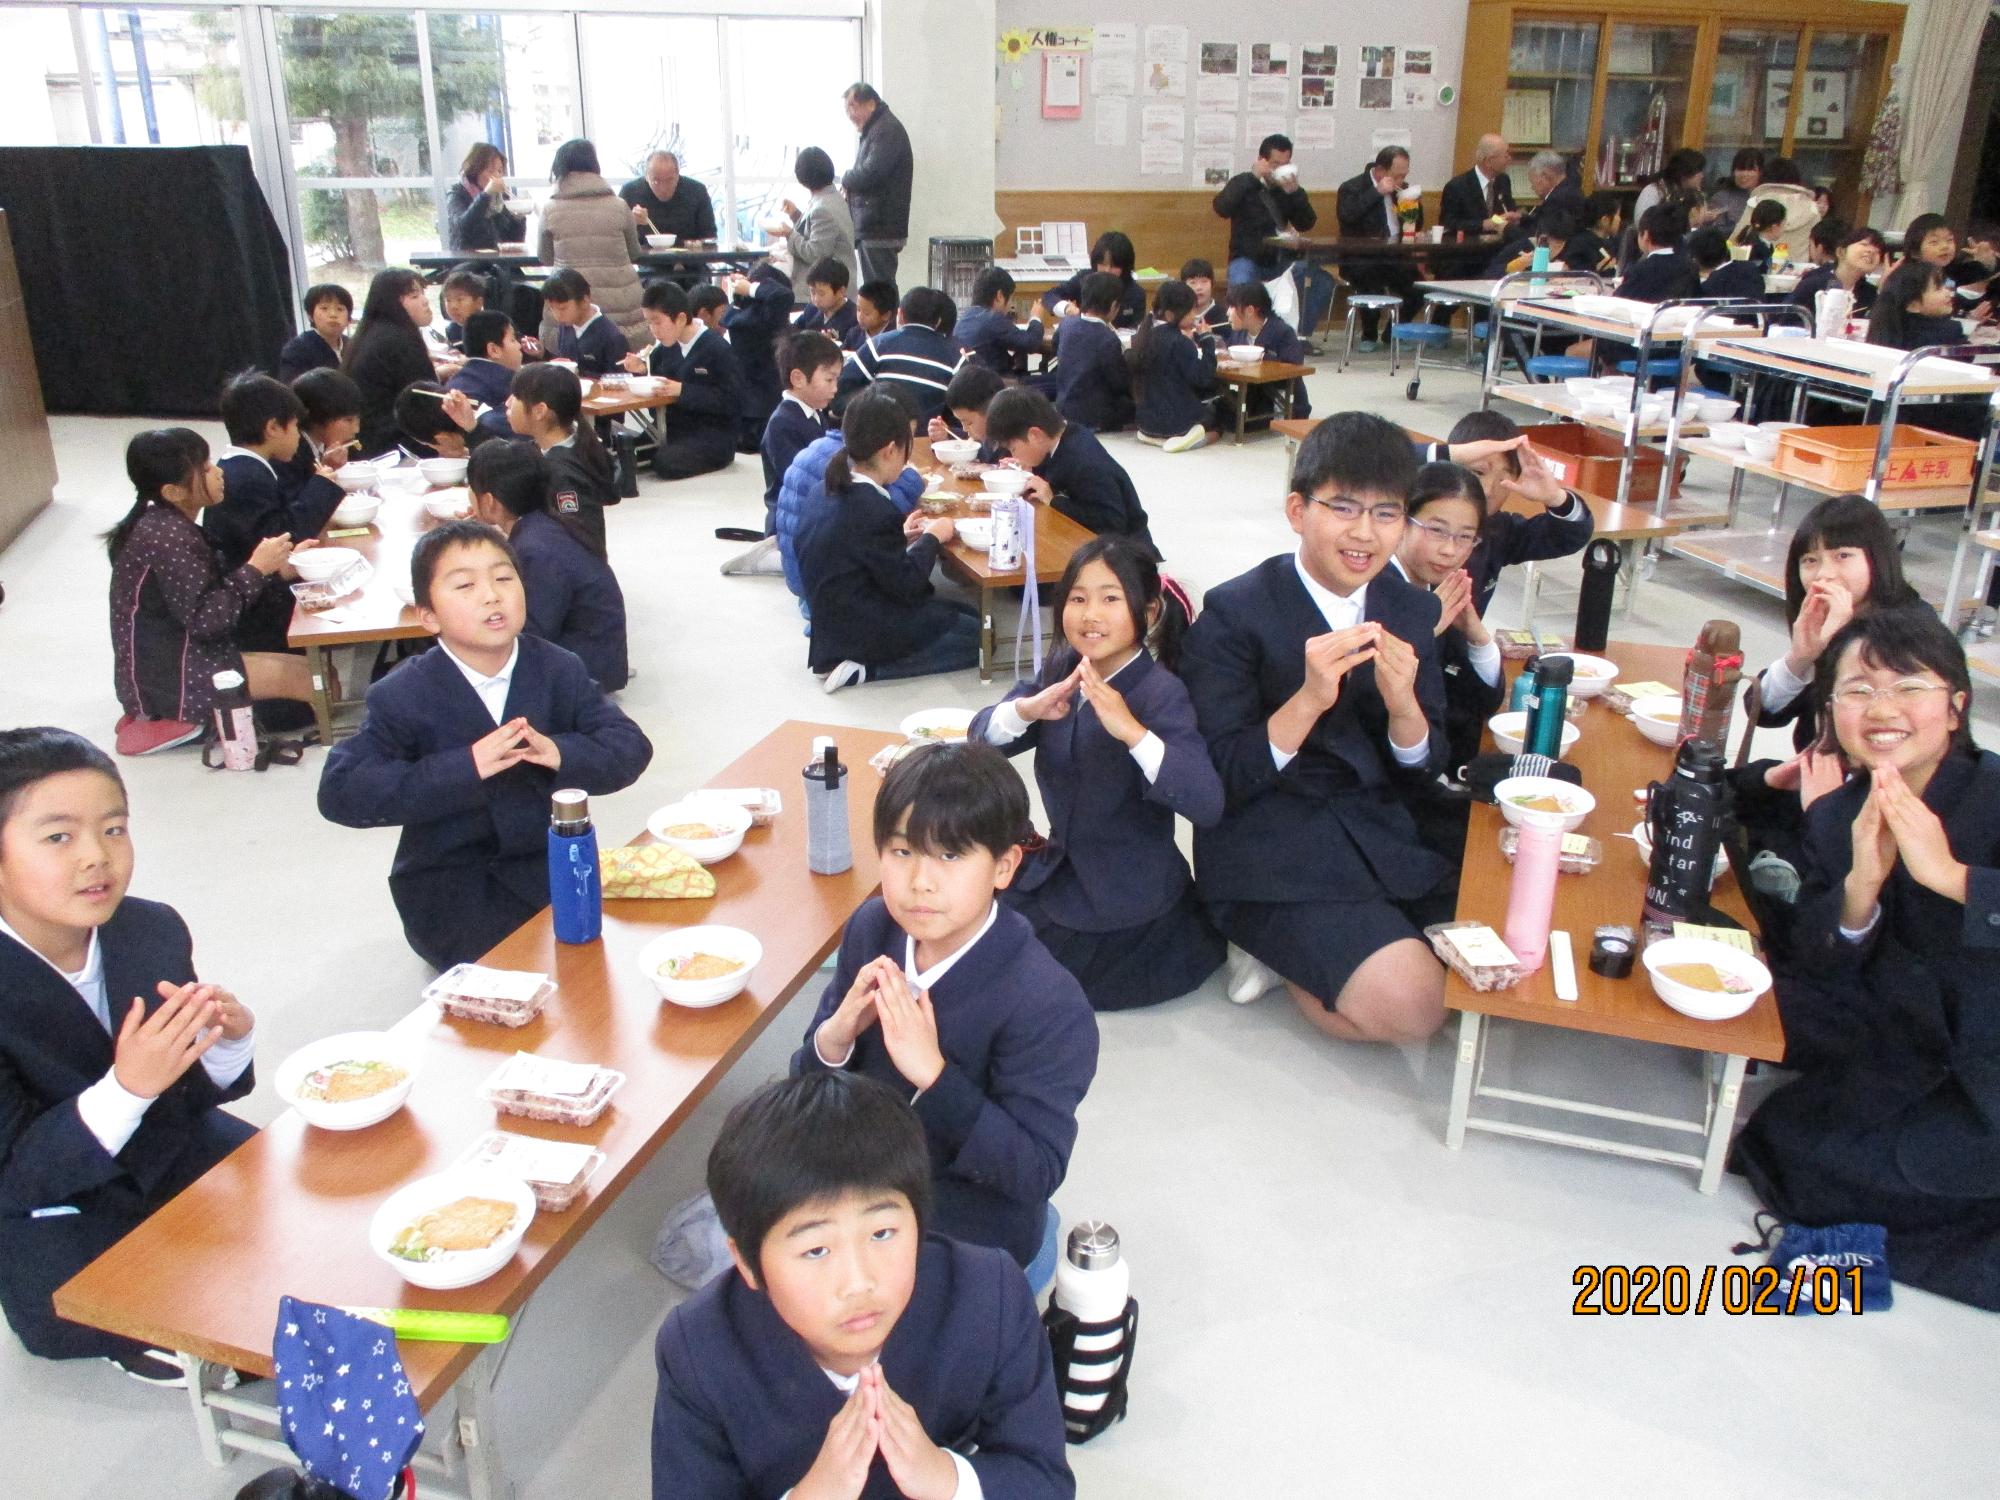 1つの長机の周りに5人ほどの生徒が座り、昼食を食べている写真。カメラを向けられている子どもたちは、両手の指の先を合わせて三角を作って写真に写っている。